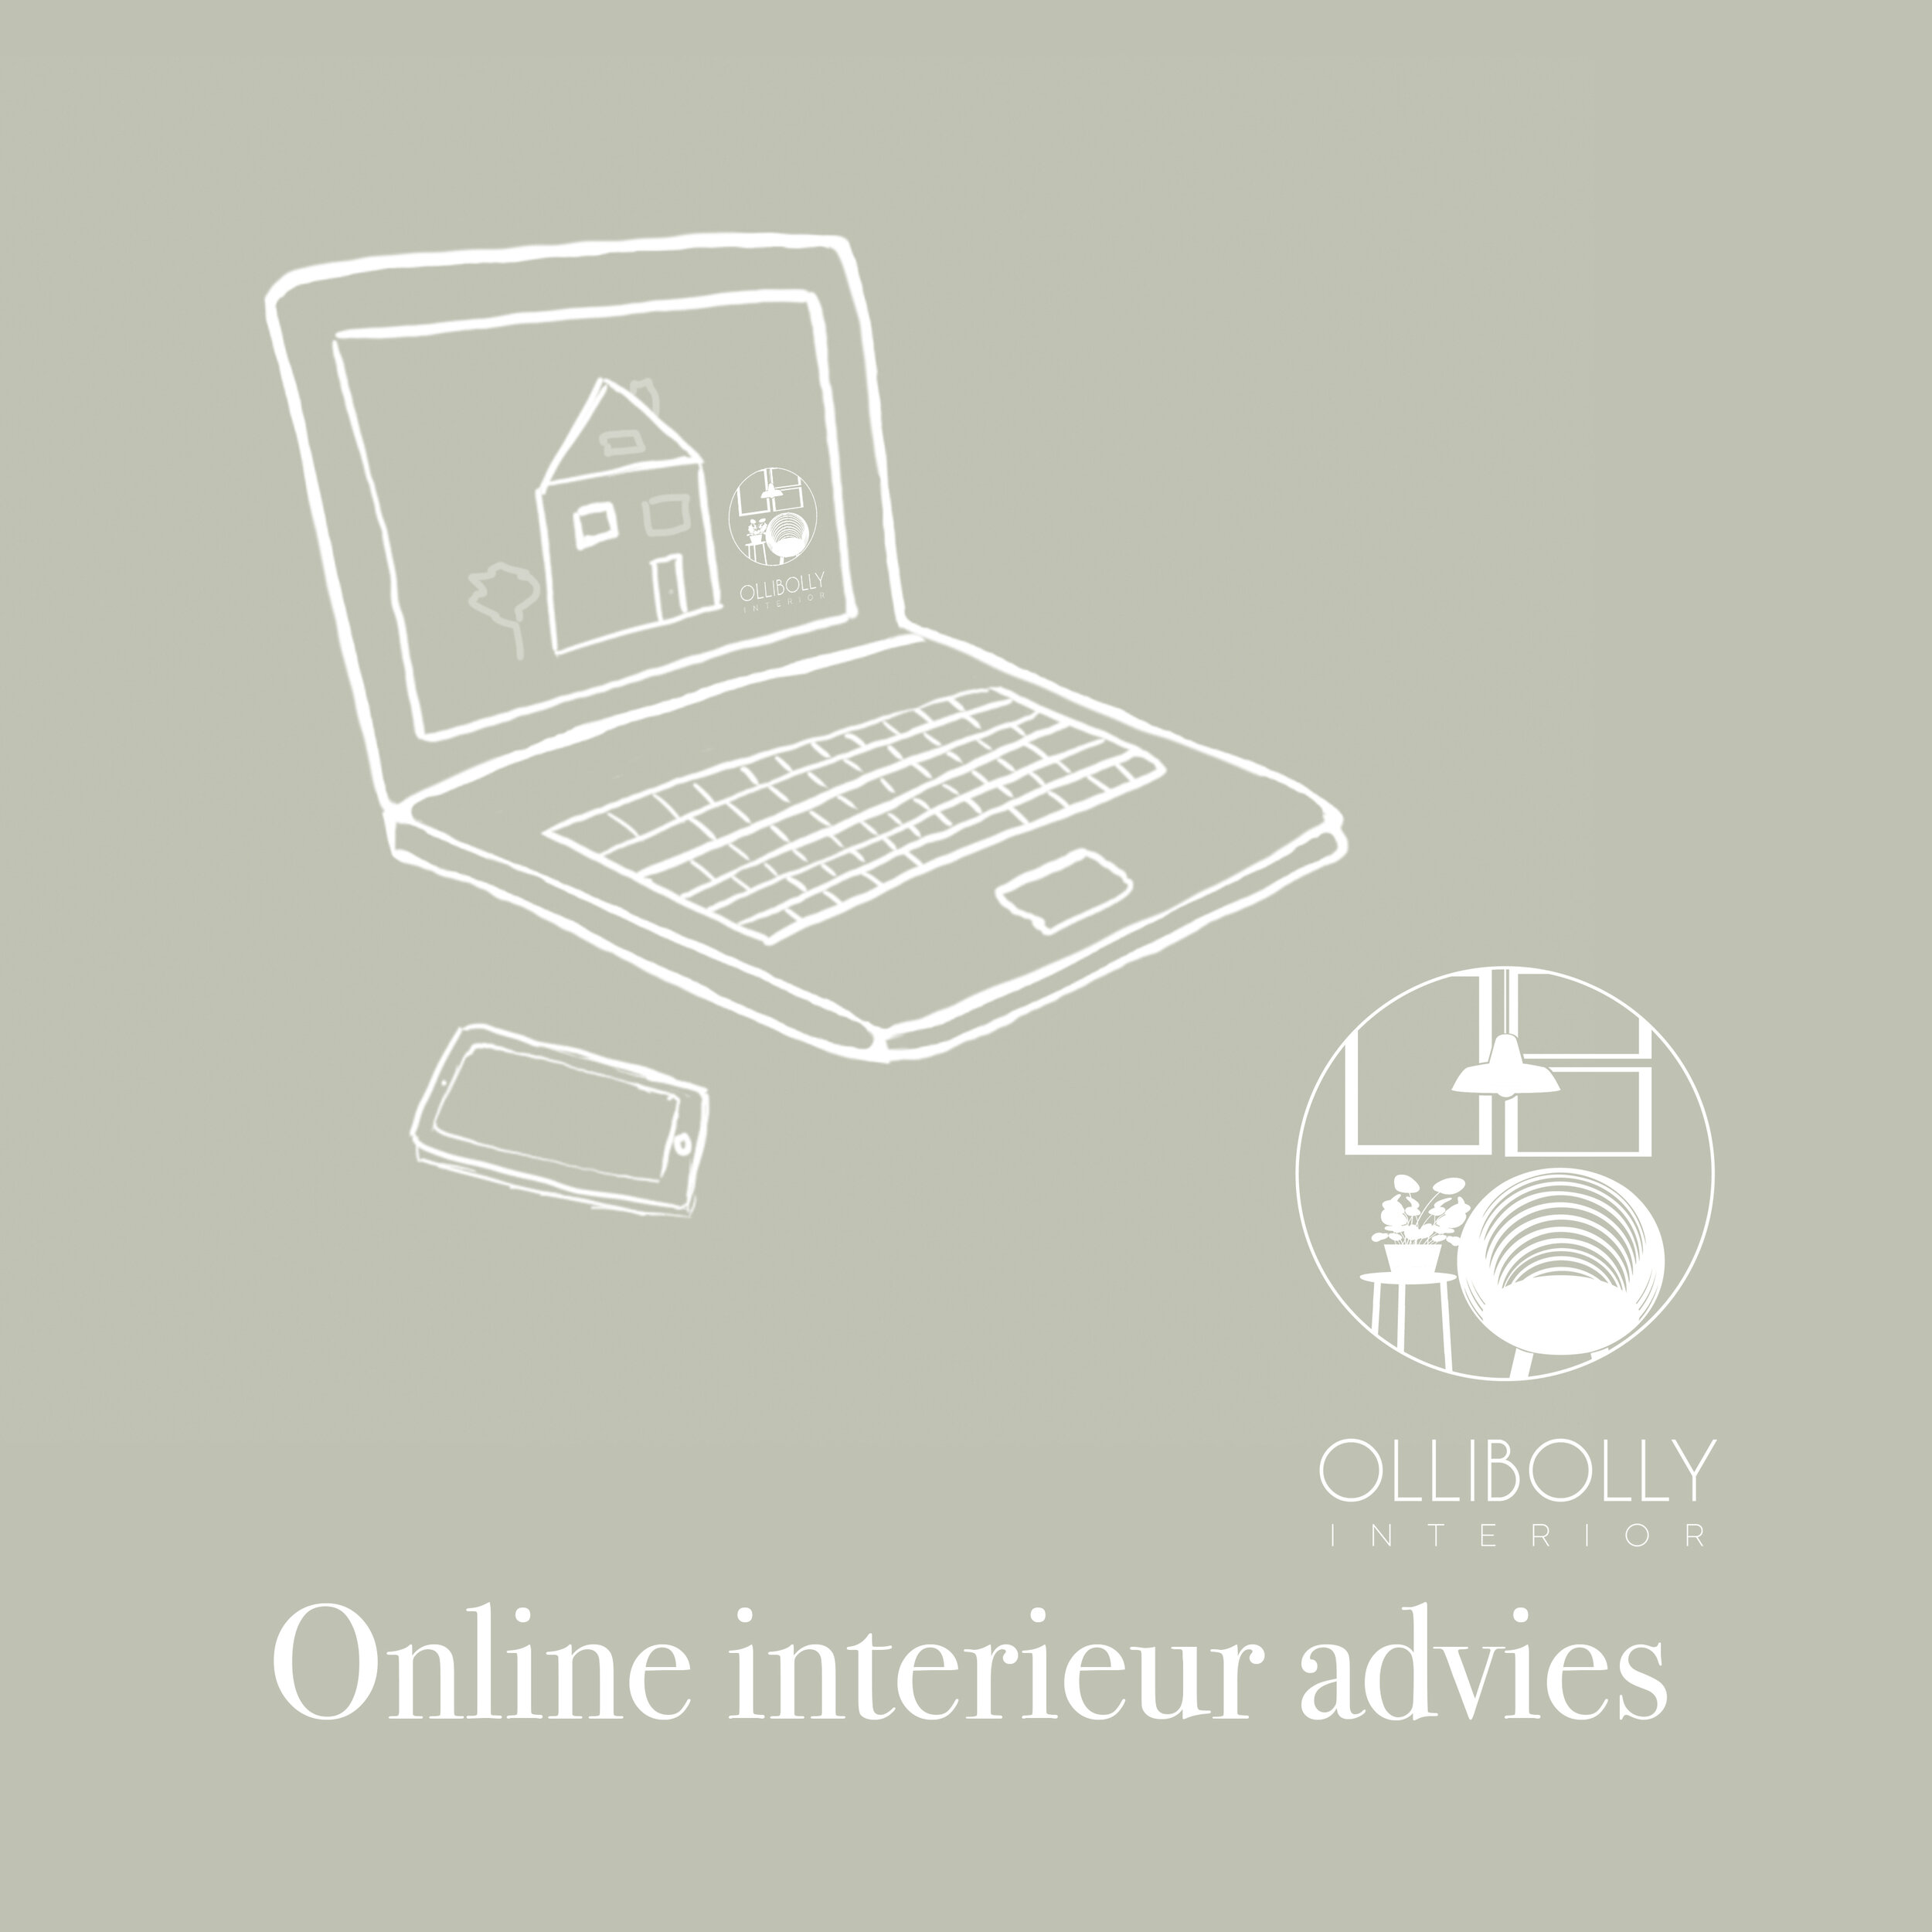 Inloggegevens havik Afrikaanse CadeauBon voor een Online Interieur Advies — Ollibolly Interior